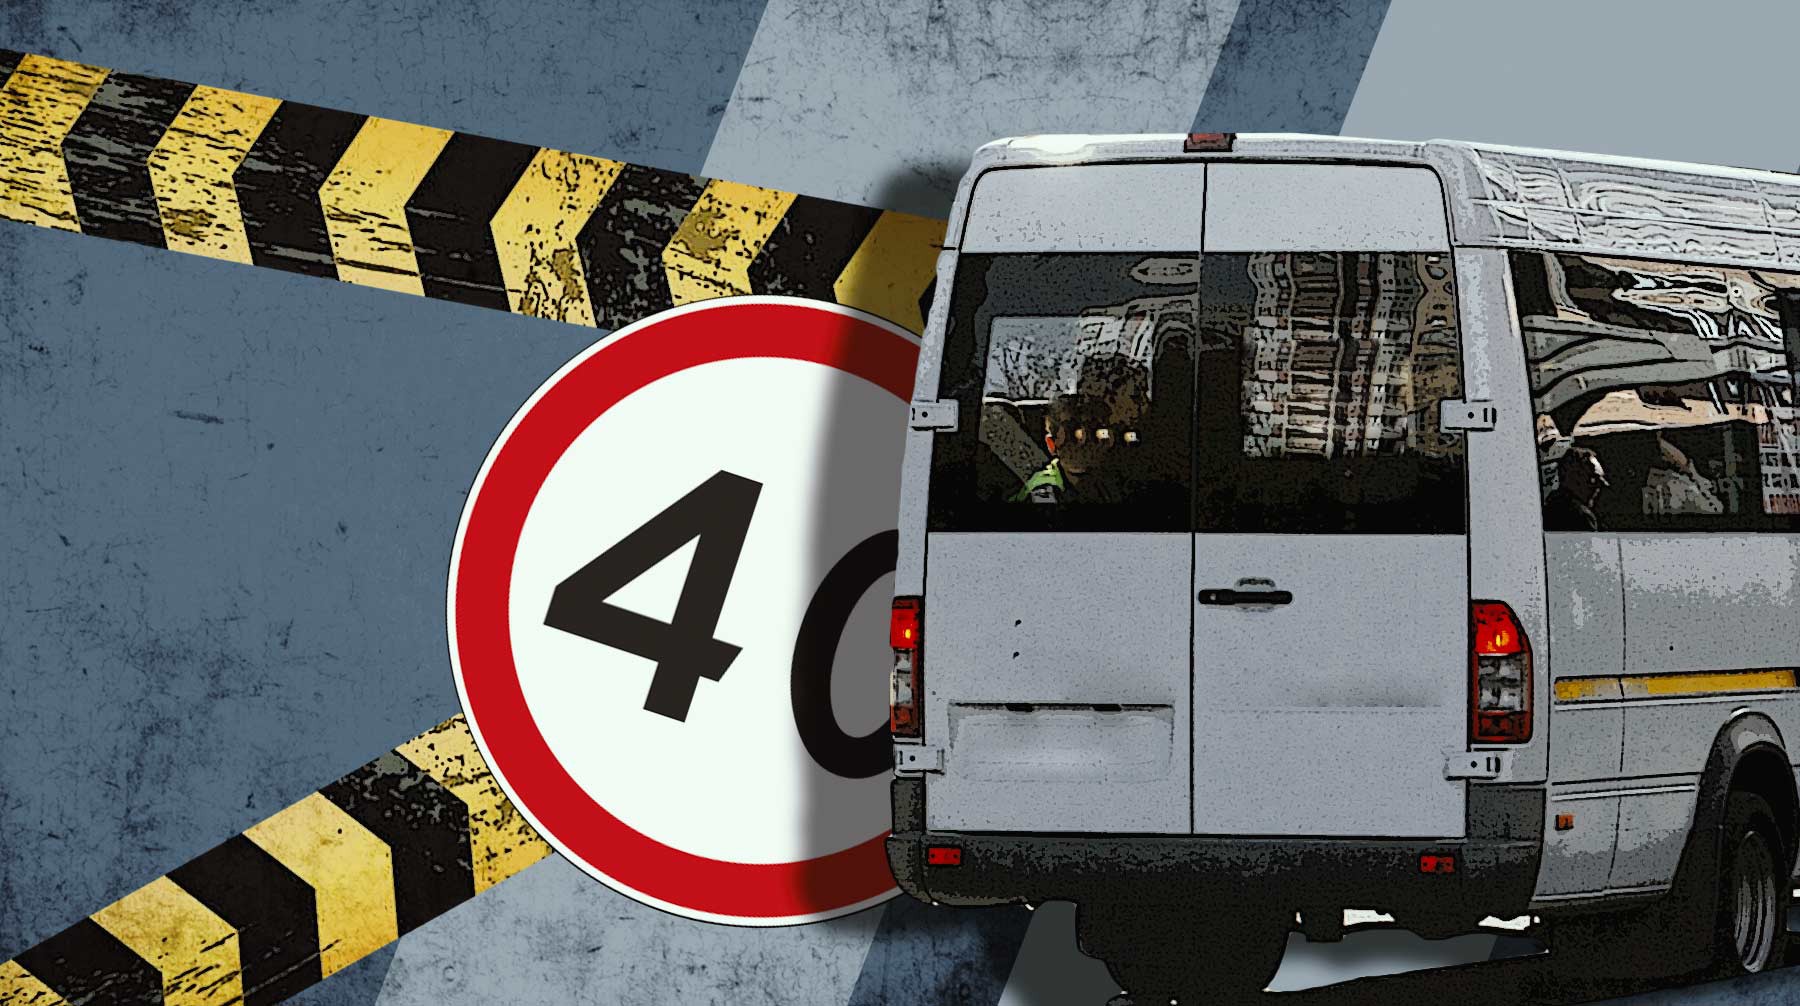 Виноват водитель «Газели», а правила могут ужесточить: в ГАИ рассказали о страшной аварии в Рязанской области